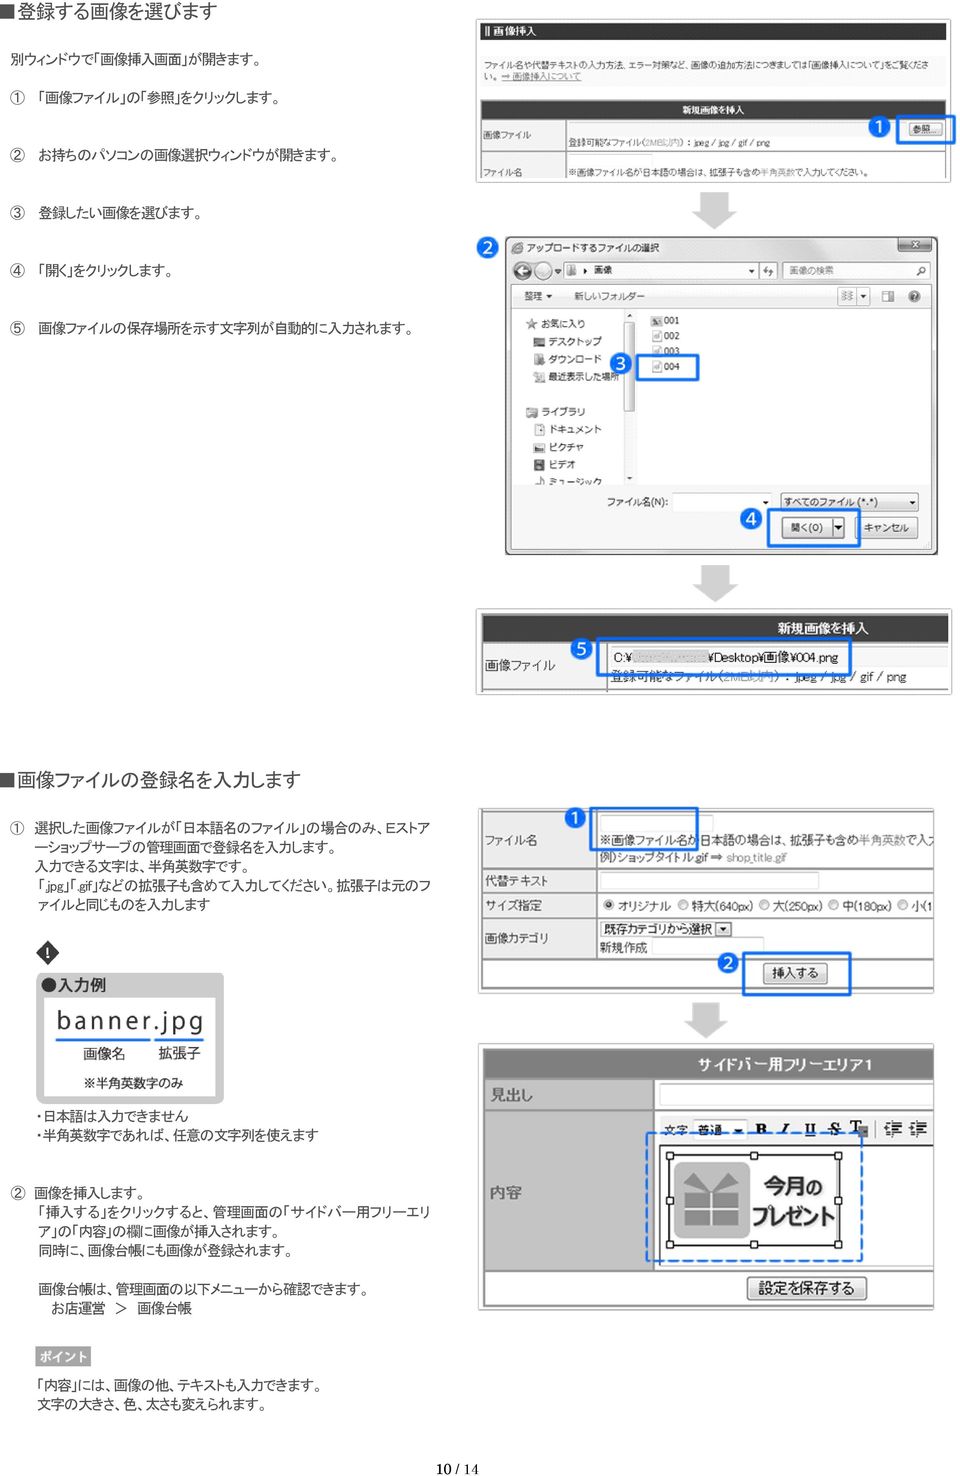 gif などの 拡 張 子 も 含 めて 入 力 してください 拡 張 子 は 元 のフ ァイルと 同 じものを 入 力 します 日 本 語 は 入 力 できません 半 角 英 数 字 であれば 任 意 の 文 字 列 を 使 えます 2 画 像 を 挿 入 します 挿 入 する をクリックすると 管 理 画 面 の サイドバー 用 フリーエリ